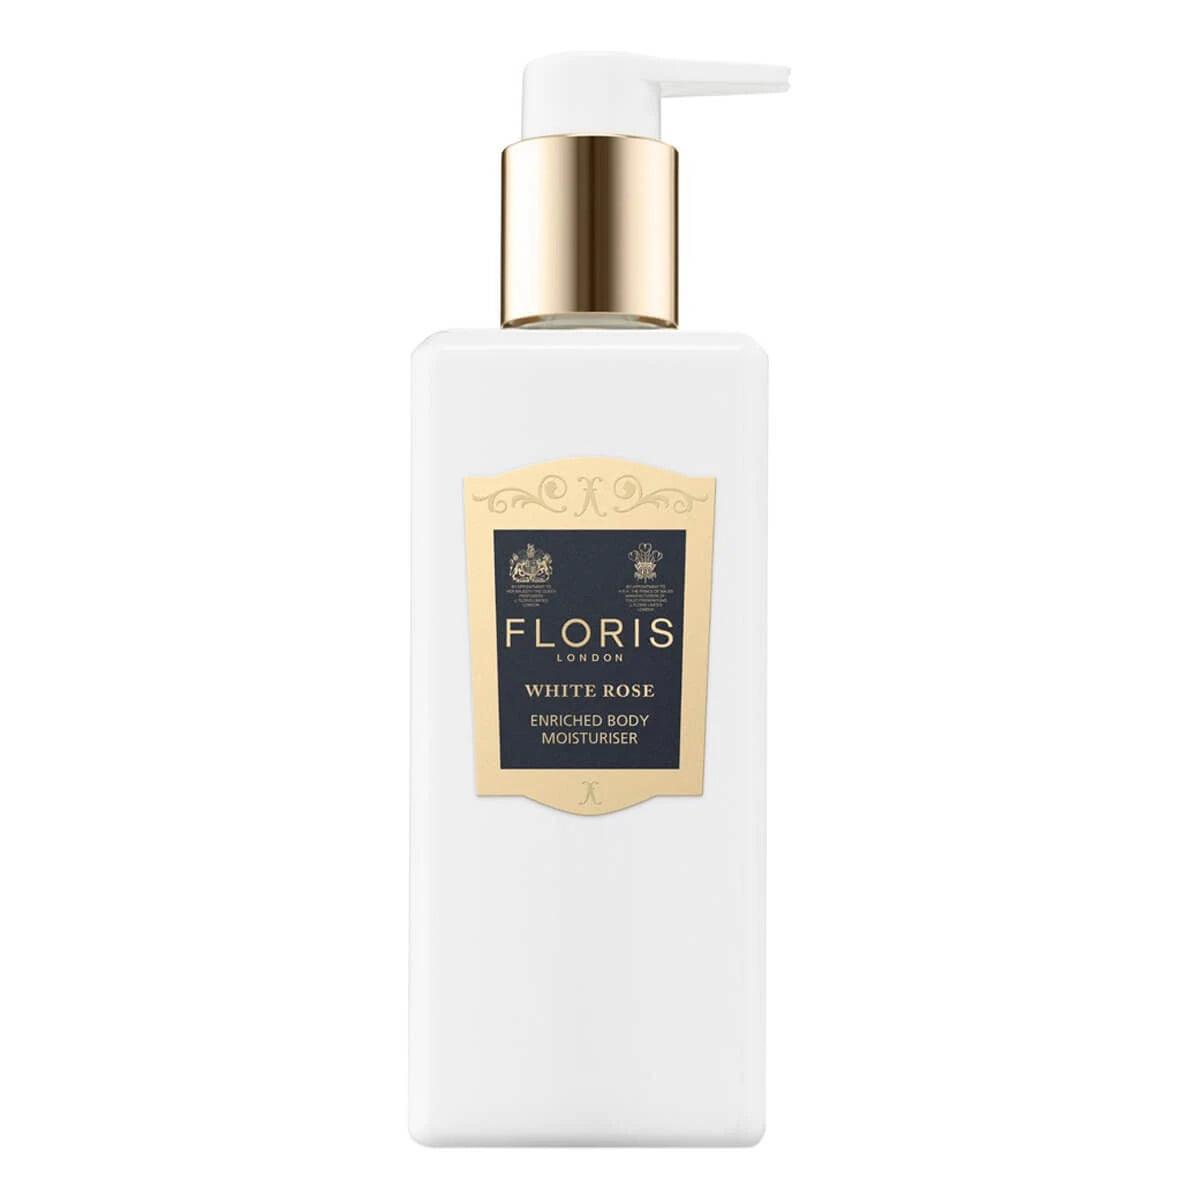 Floris White Rose, Enriched Body Moisturiser | Body Lotion | Floris London | JK SHOP | JK Barber og herre frisør | Lavepriser | Best